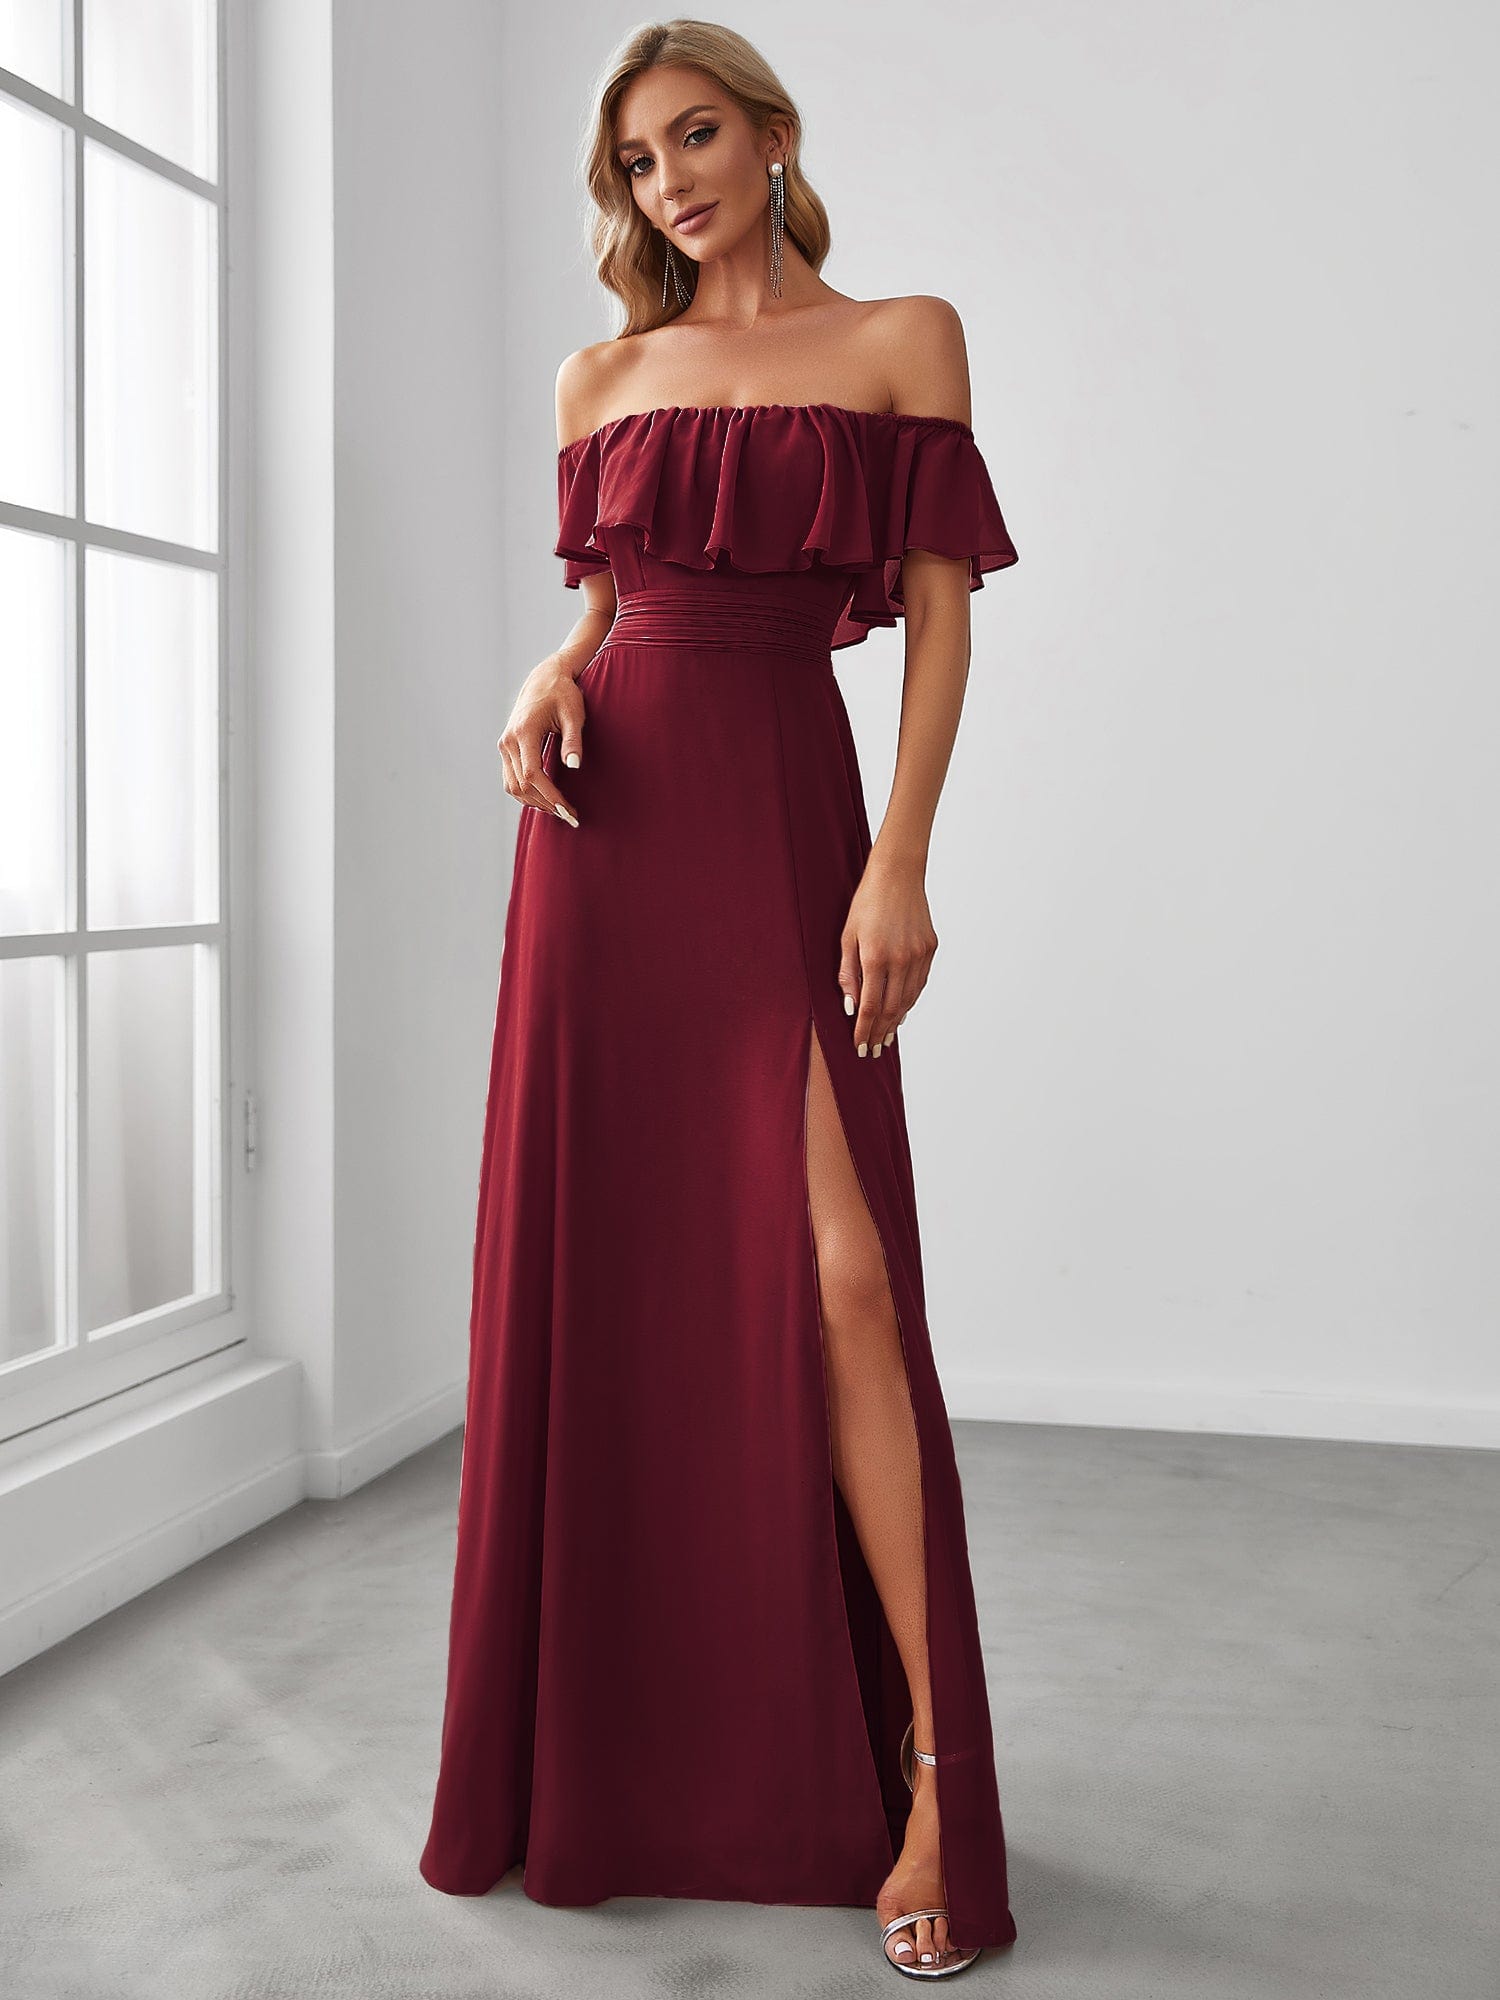 Off the Shoulder Split Burgundy Dress - Ever-Pretty US